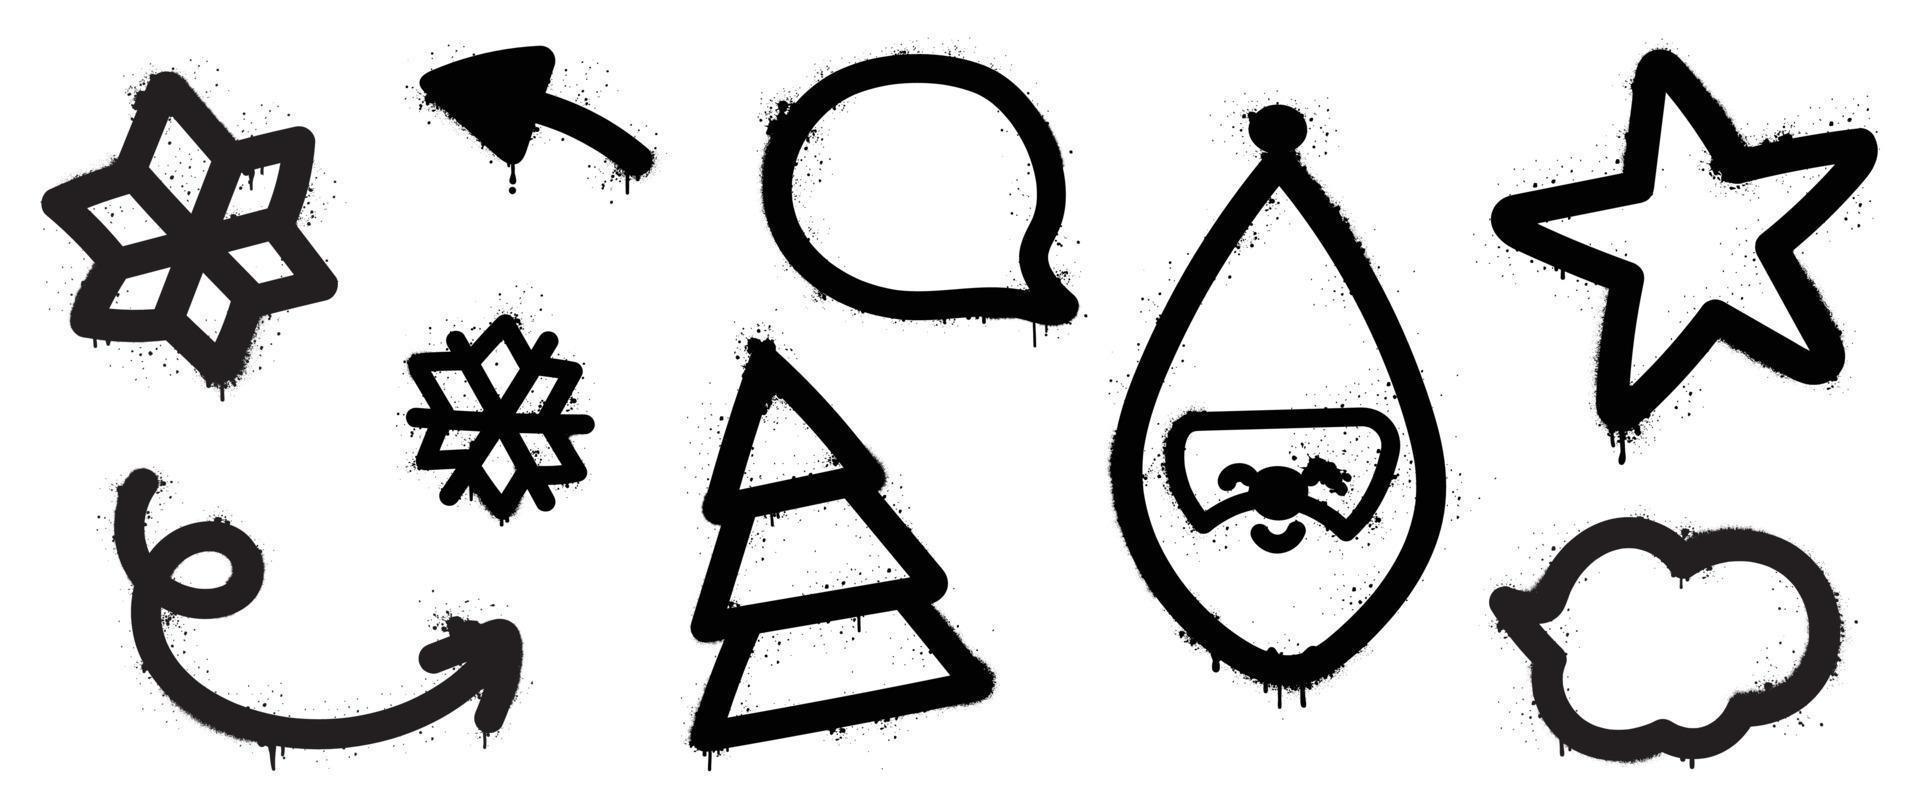 uppsättning av jul element svart spray måla vektor. graffiti, grunge element av snöflinga, pil, jul träd, tomte, stjärna på vit bakgrund. design illustration för dekoration, kort, klistermärke. vektor